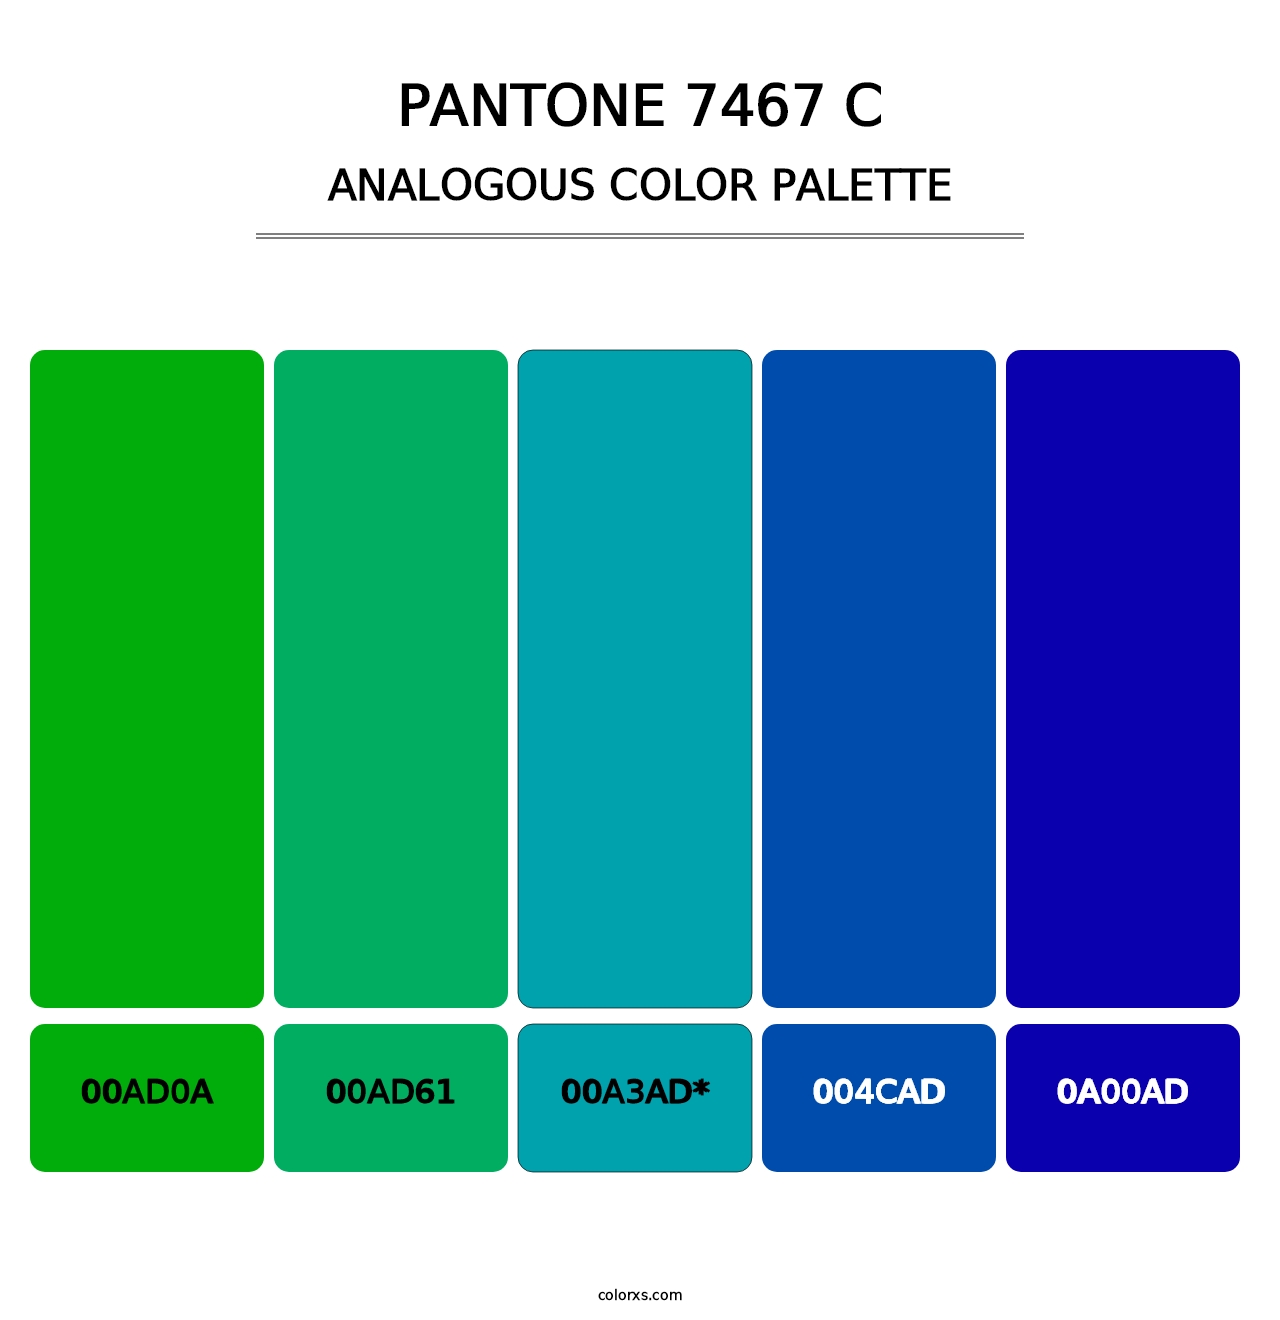 PANTONE 7467 C - Analogous Color Palette